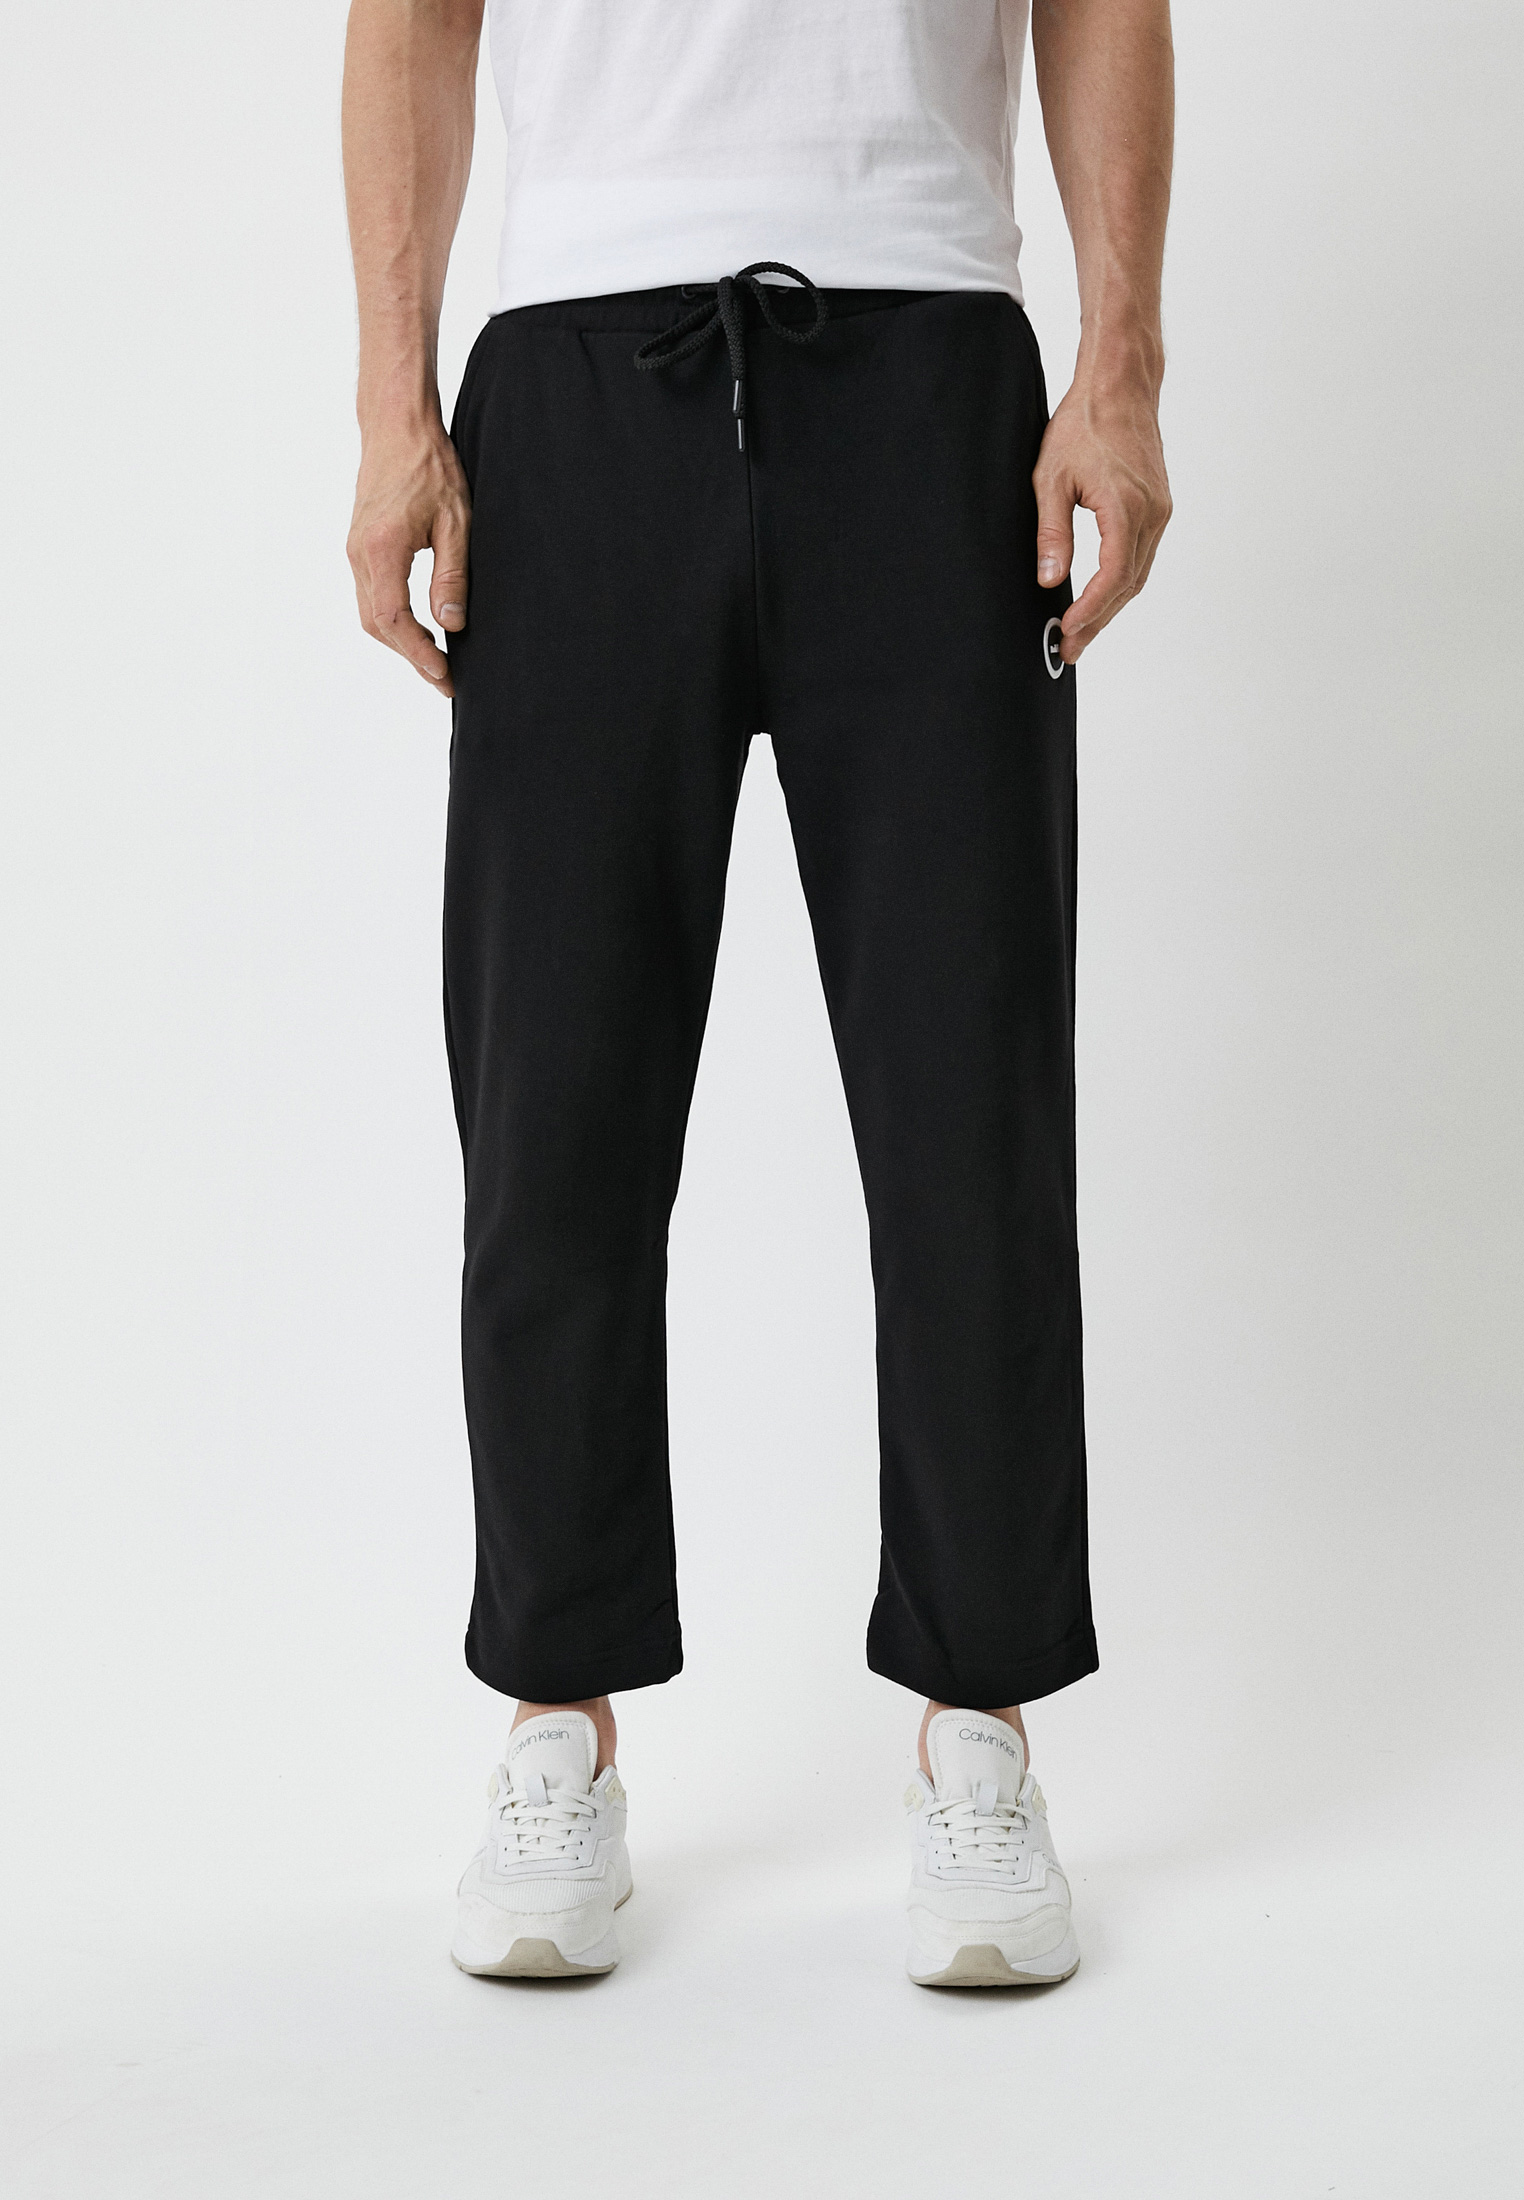 Мужские спортивные брюки Baldinini (Балдинини) M106: изображение 1